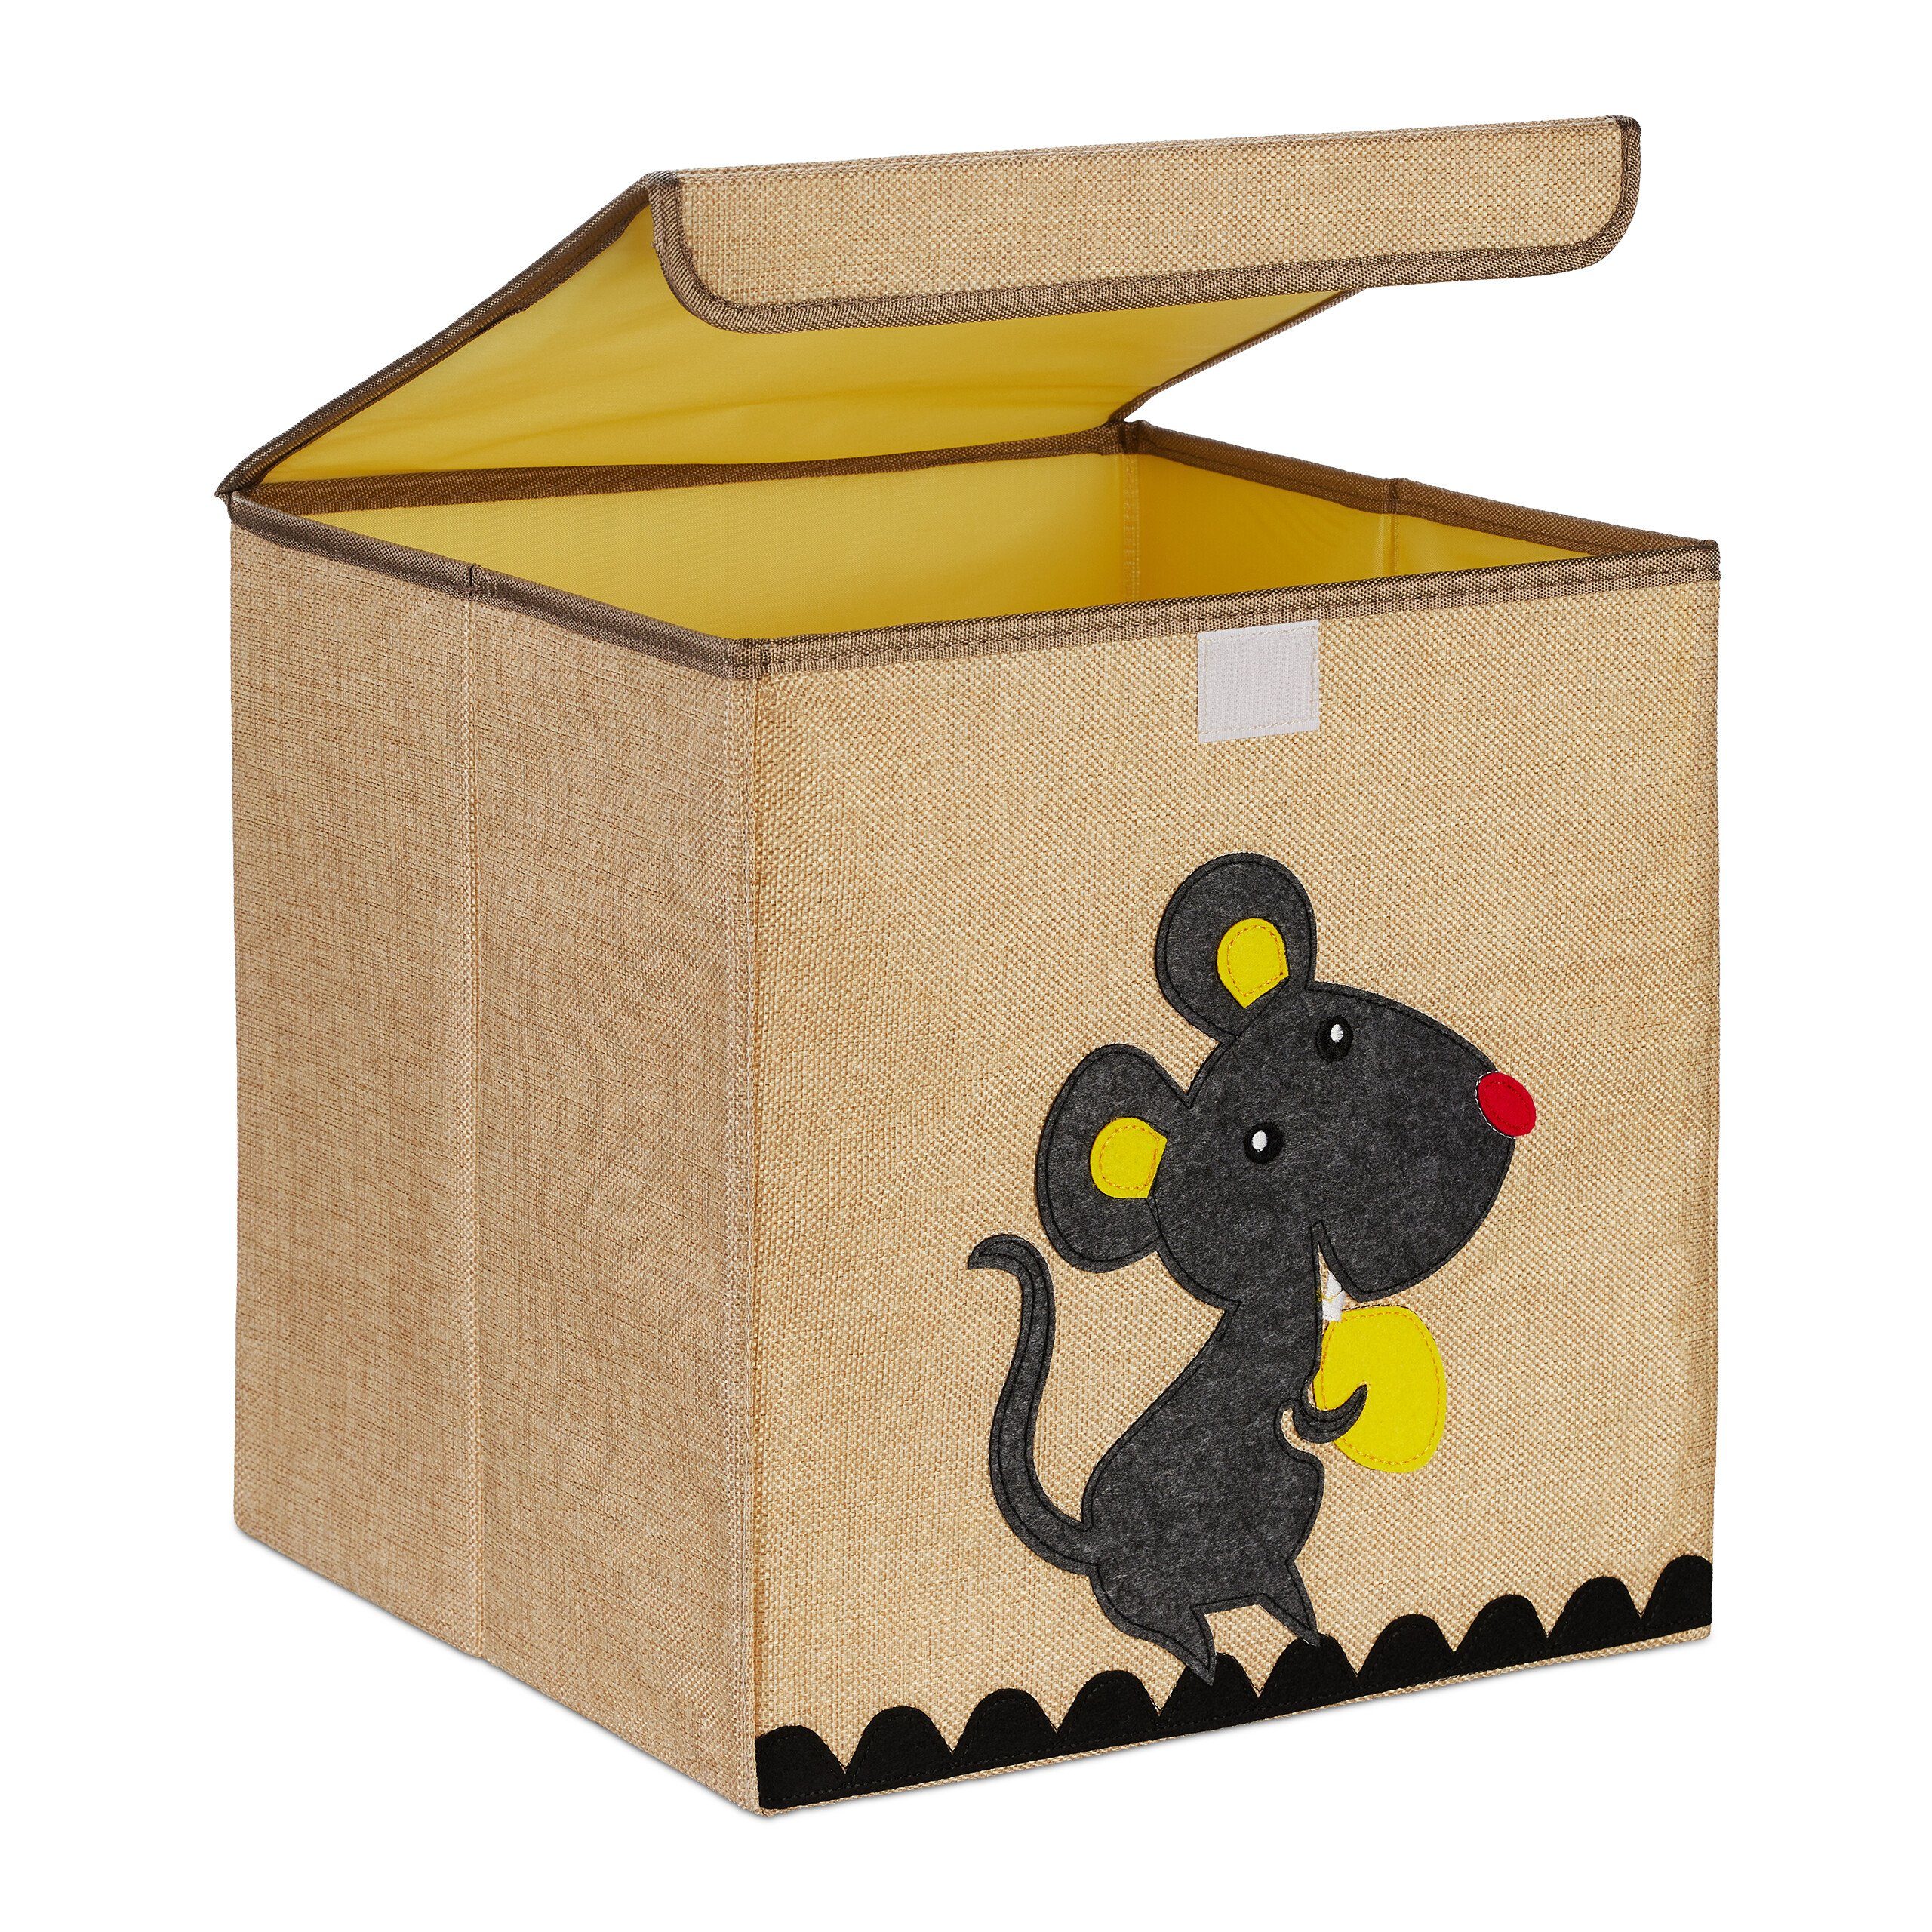 relaxdays Aufbewahrungsbox Aufbewahrungsbox für Kinder, Maus Beige Anthrazit Gelb